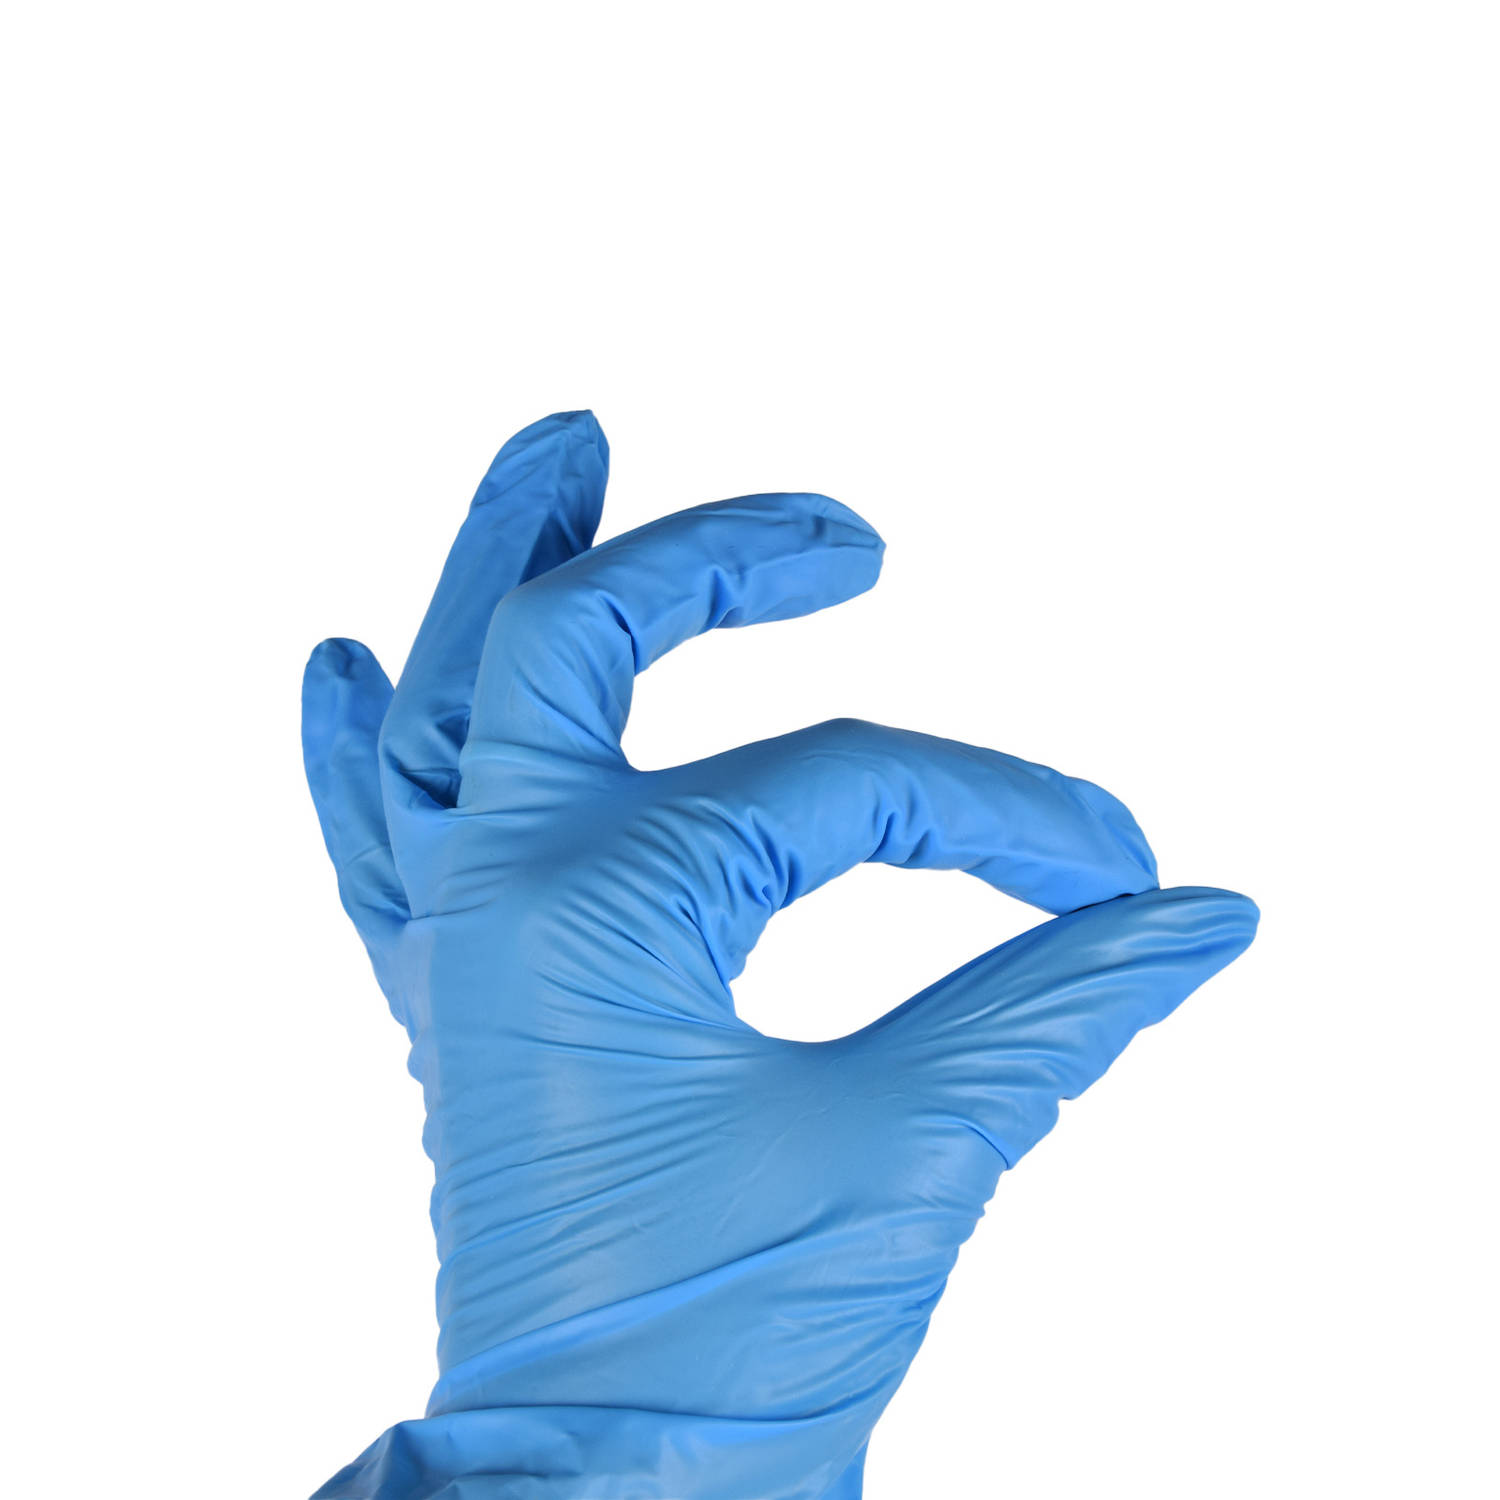 Nitril Wegwerp Handschoenen | Maat M – Latexvrij, Poedervrij & Waterdicht | 100 stuks in Blauw